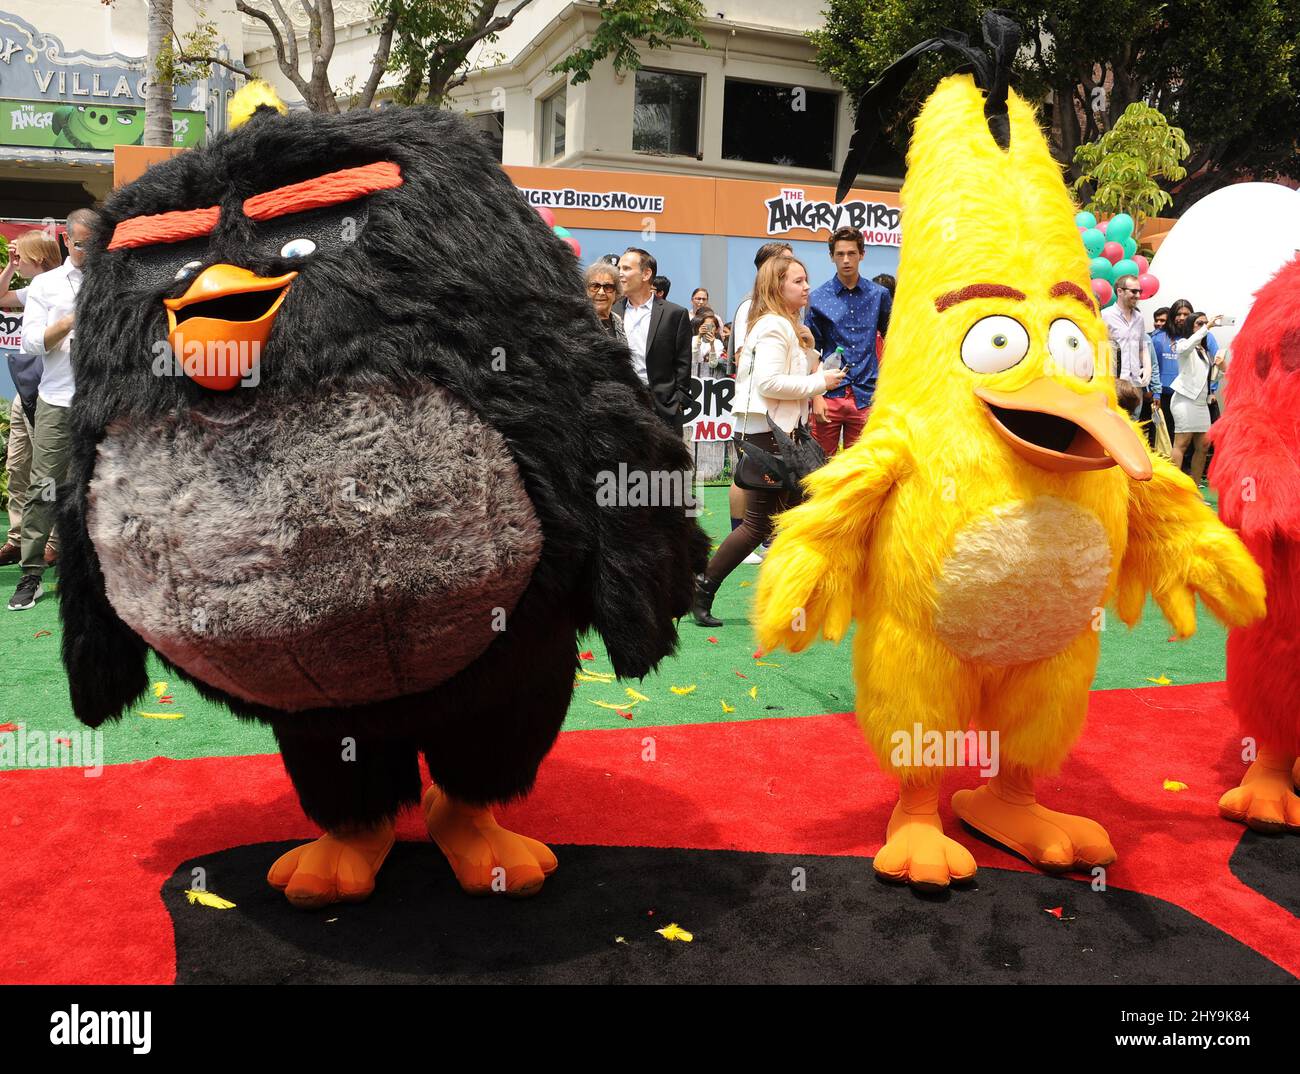 Angry Birds en costume pour assister à la première du film Angry Birds au Regency Village Theatre. Banque D'Images